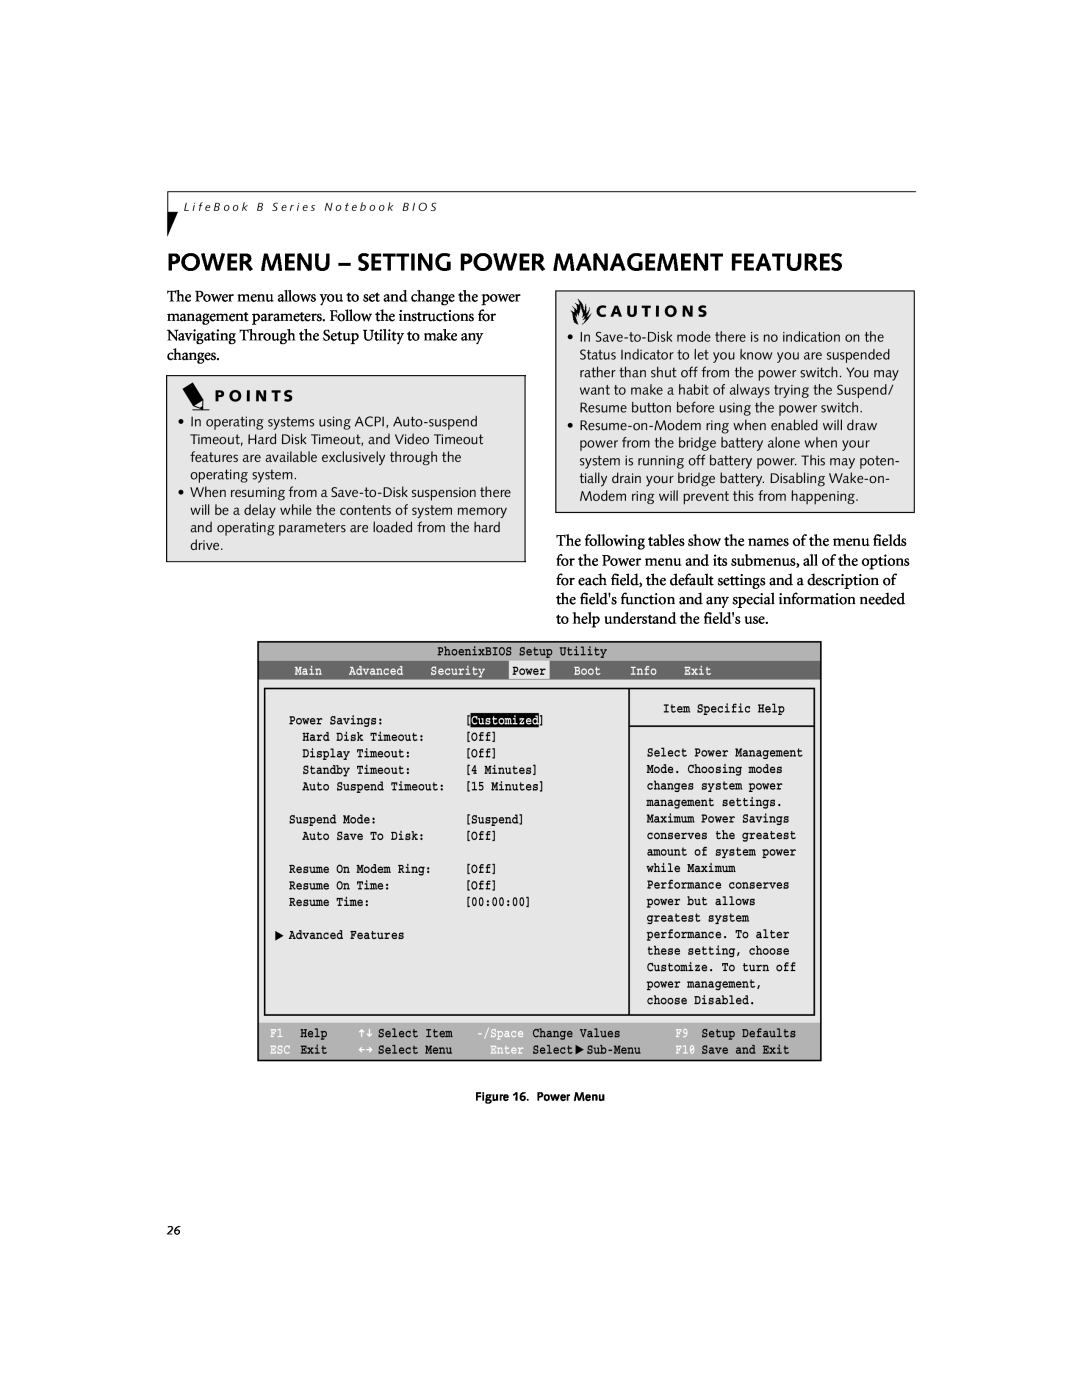 Fujitsu B2620 manual Power Menu - Setting Power Management Features, P O I N T S, C A U T I O N S 